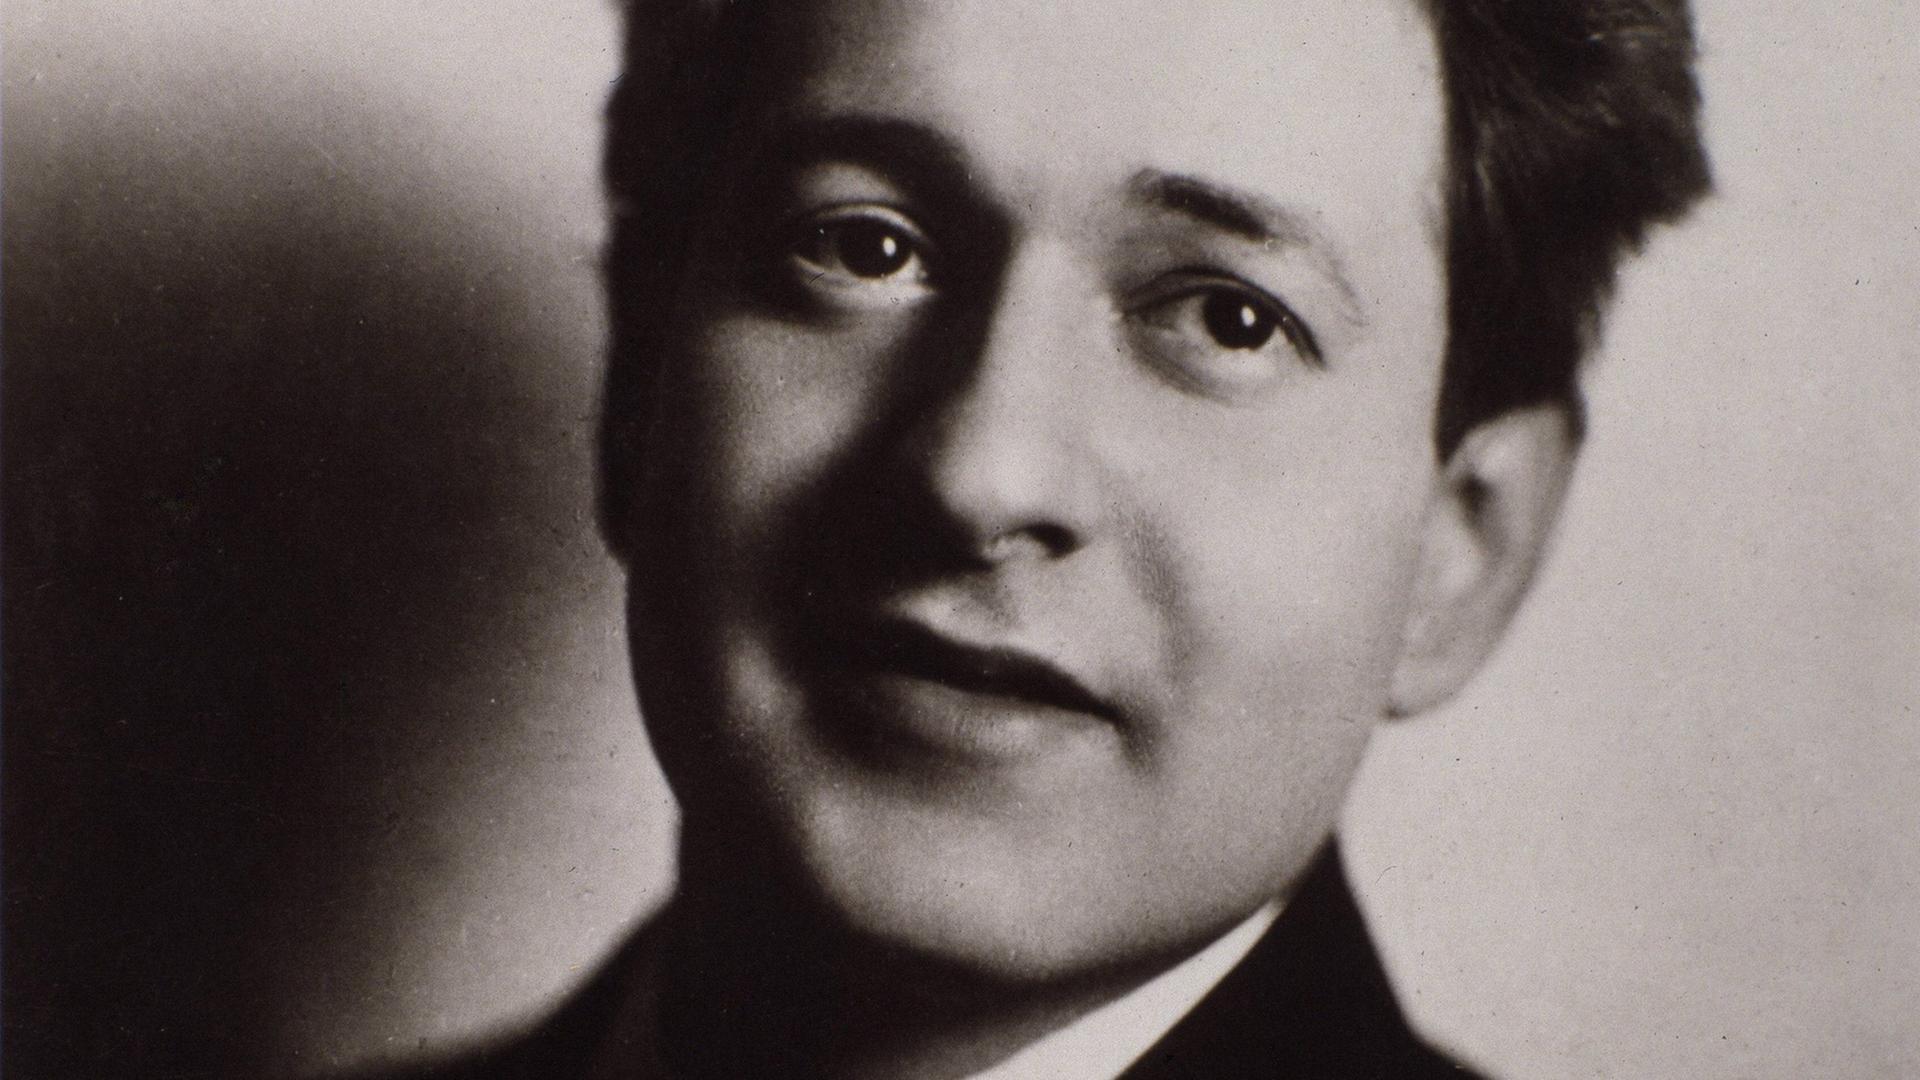 Komponist Erich Wolfgang Korngold lächelt in einer schwarz-weißen Porträtaufnahme.